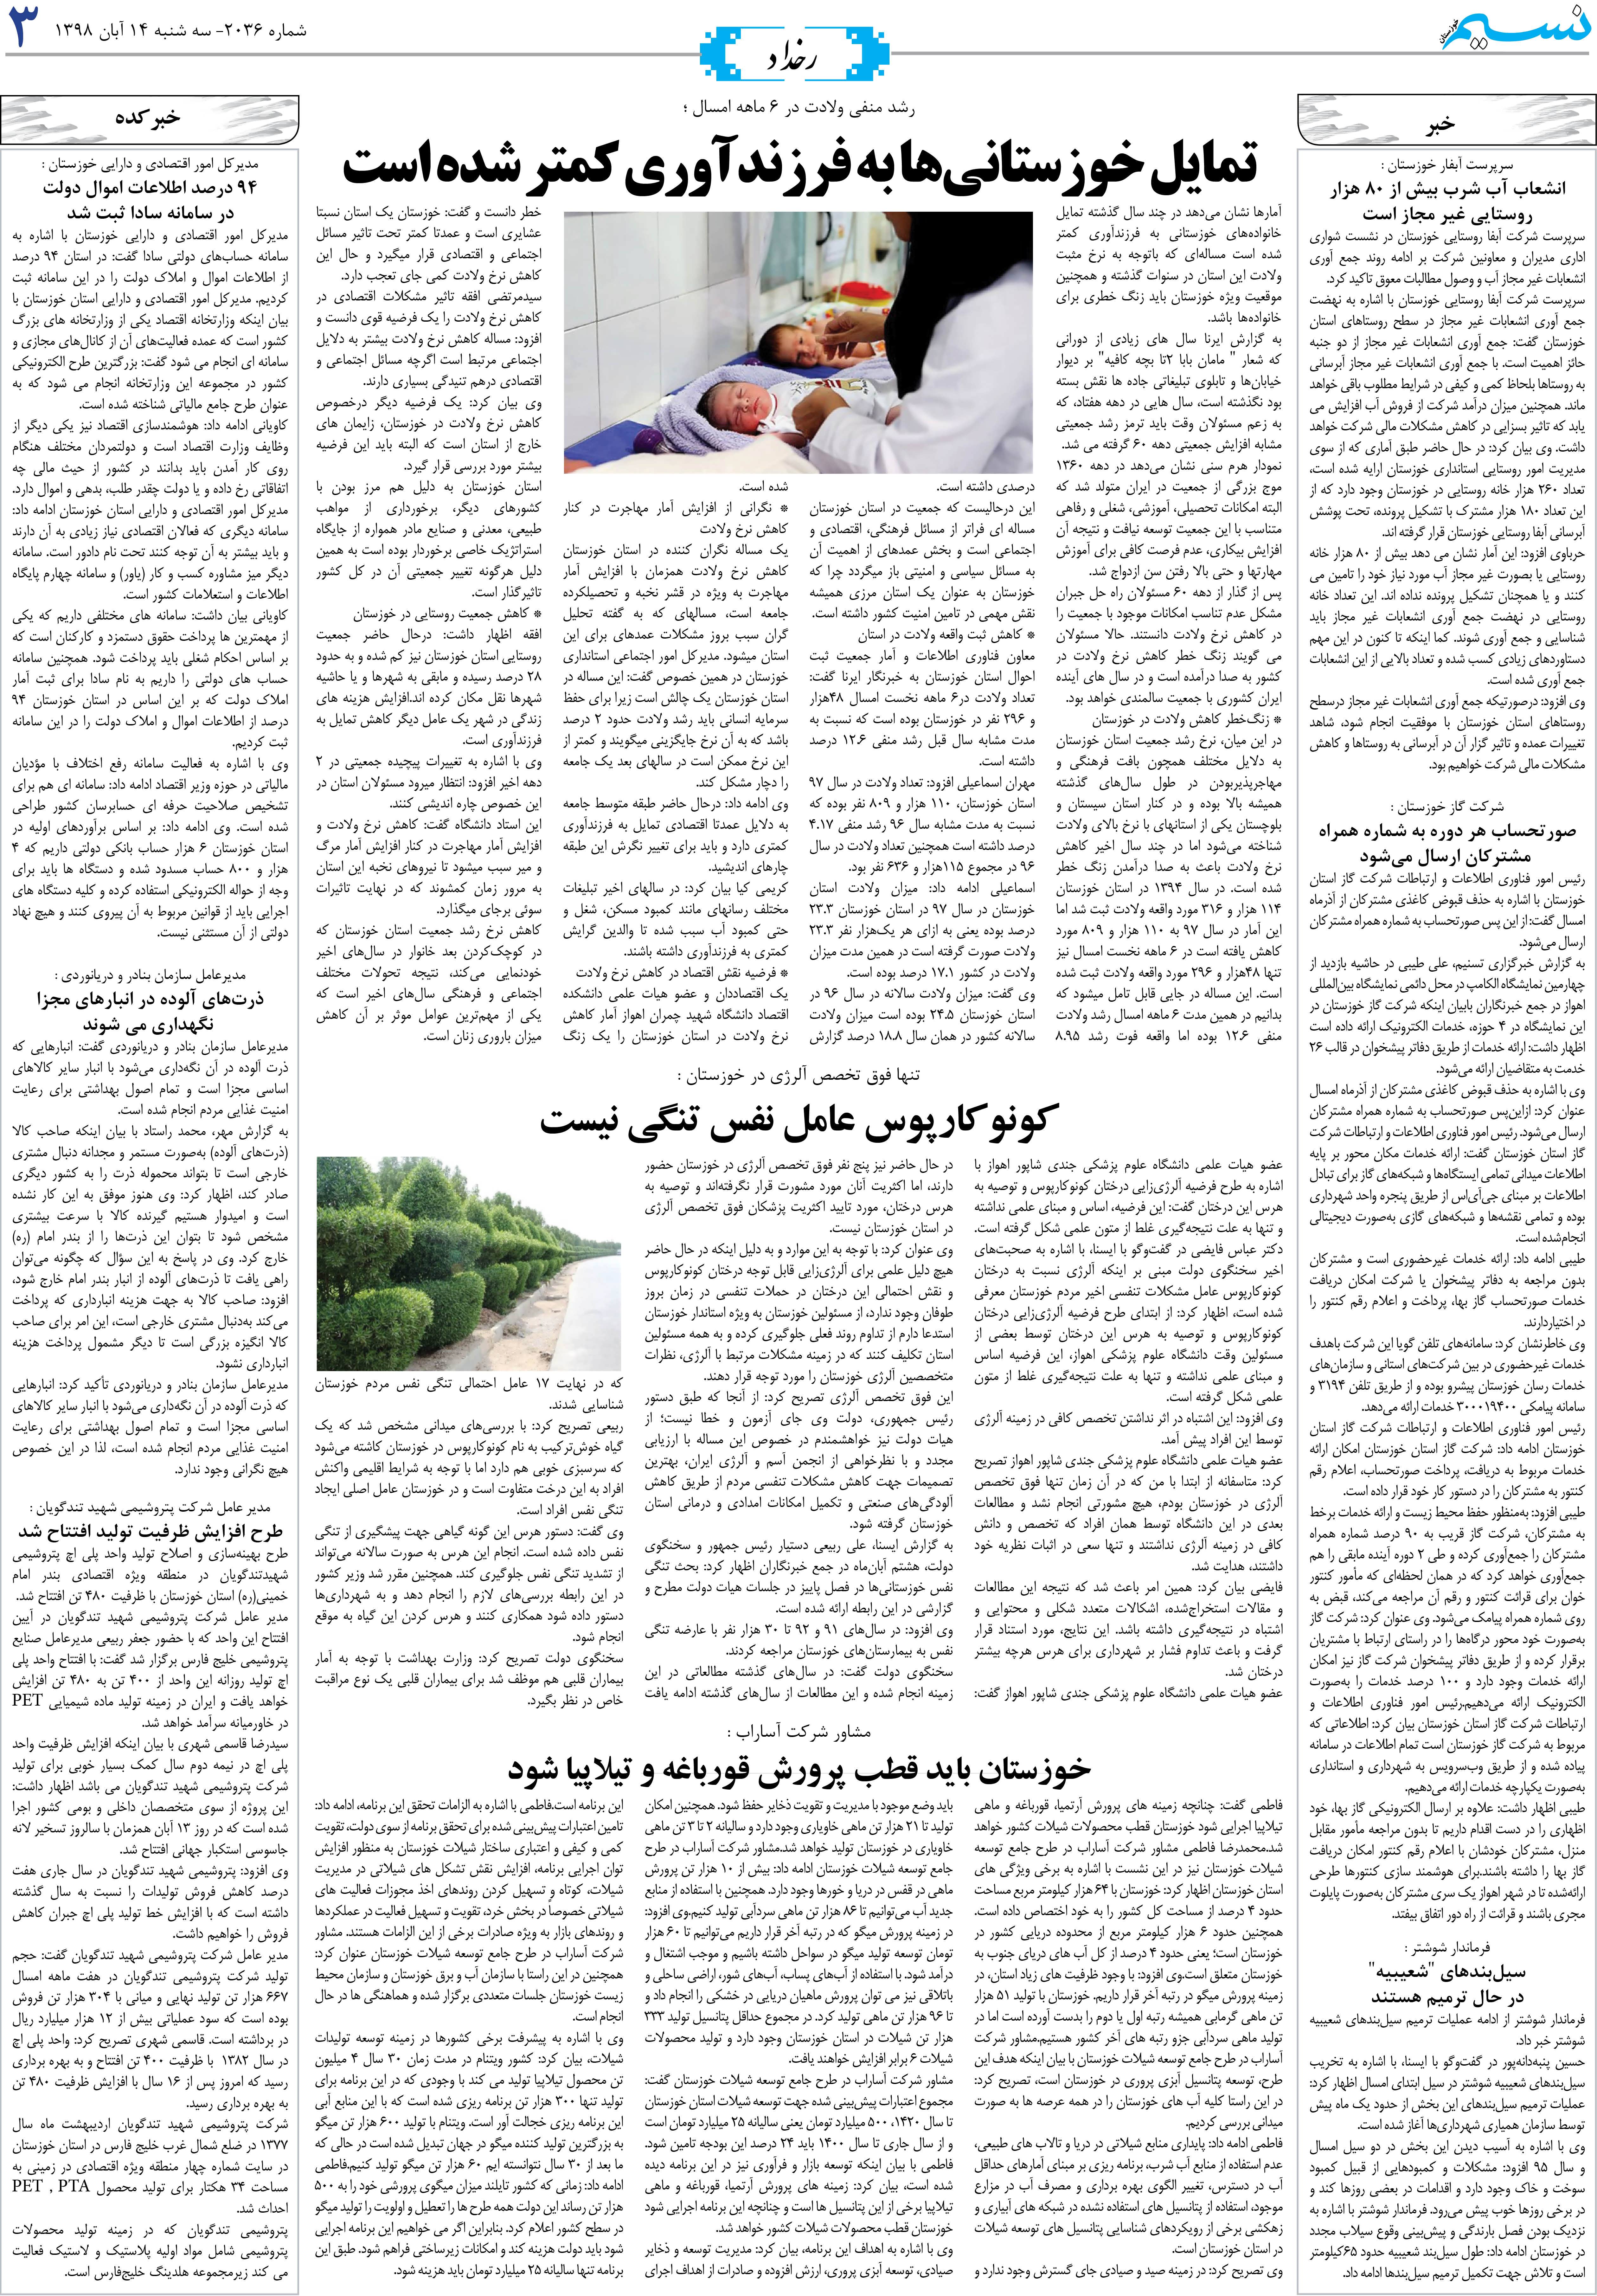 صفحه رخداد روزنامه نسیم شماره 2036